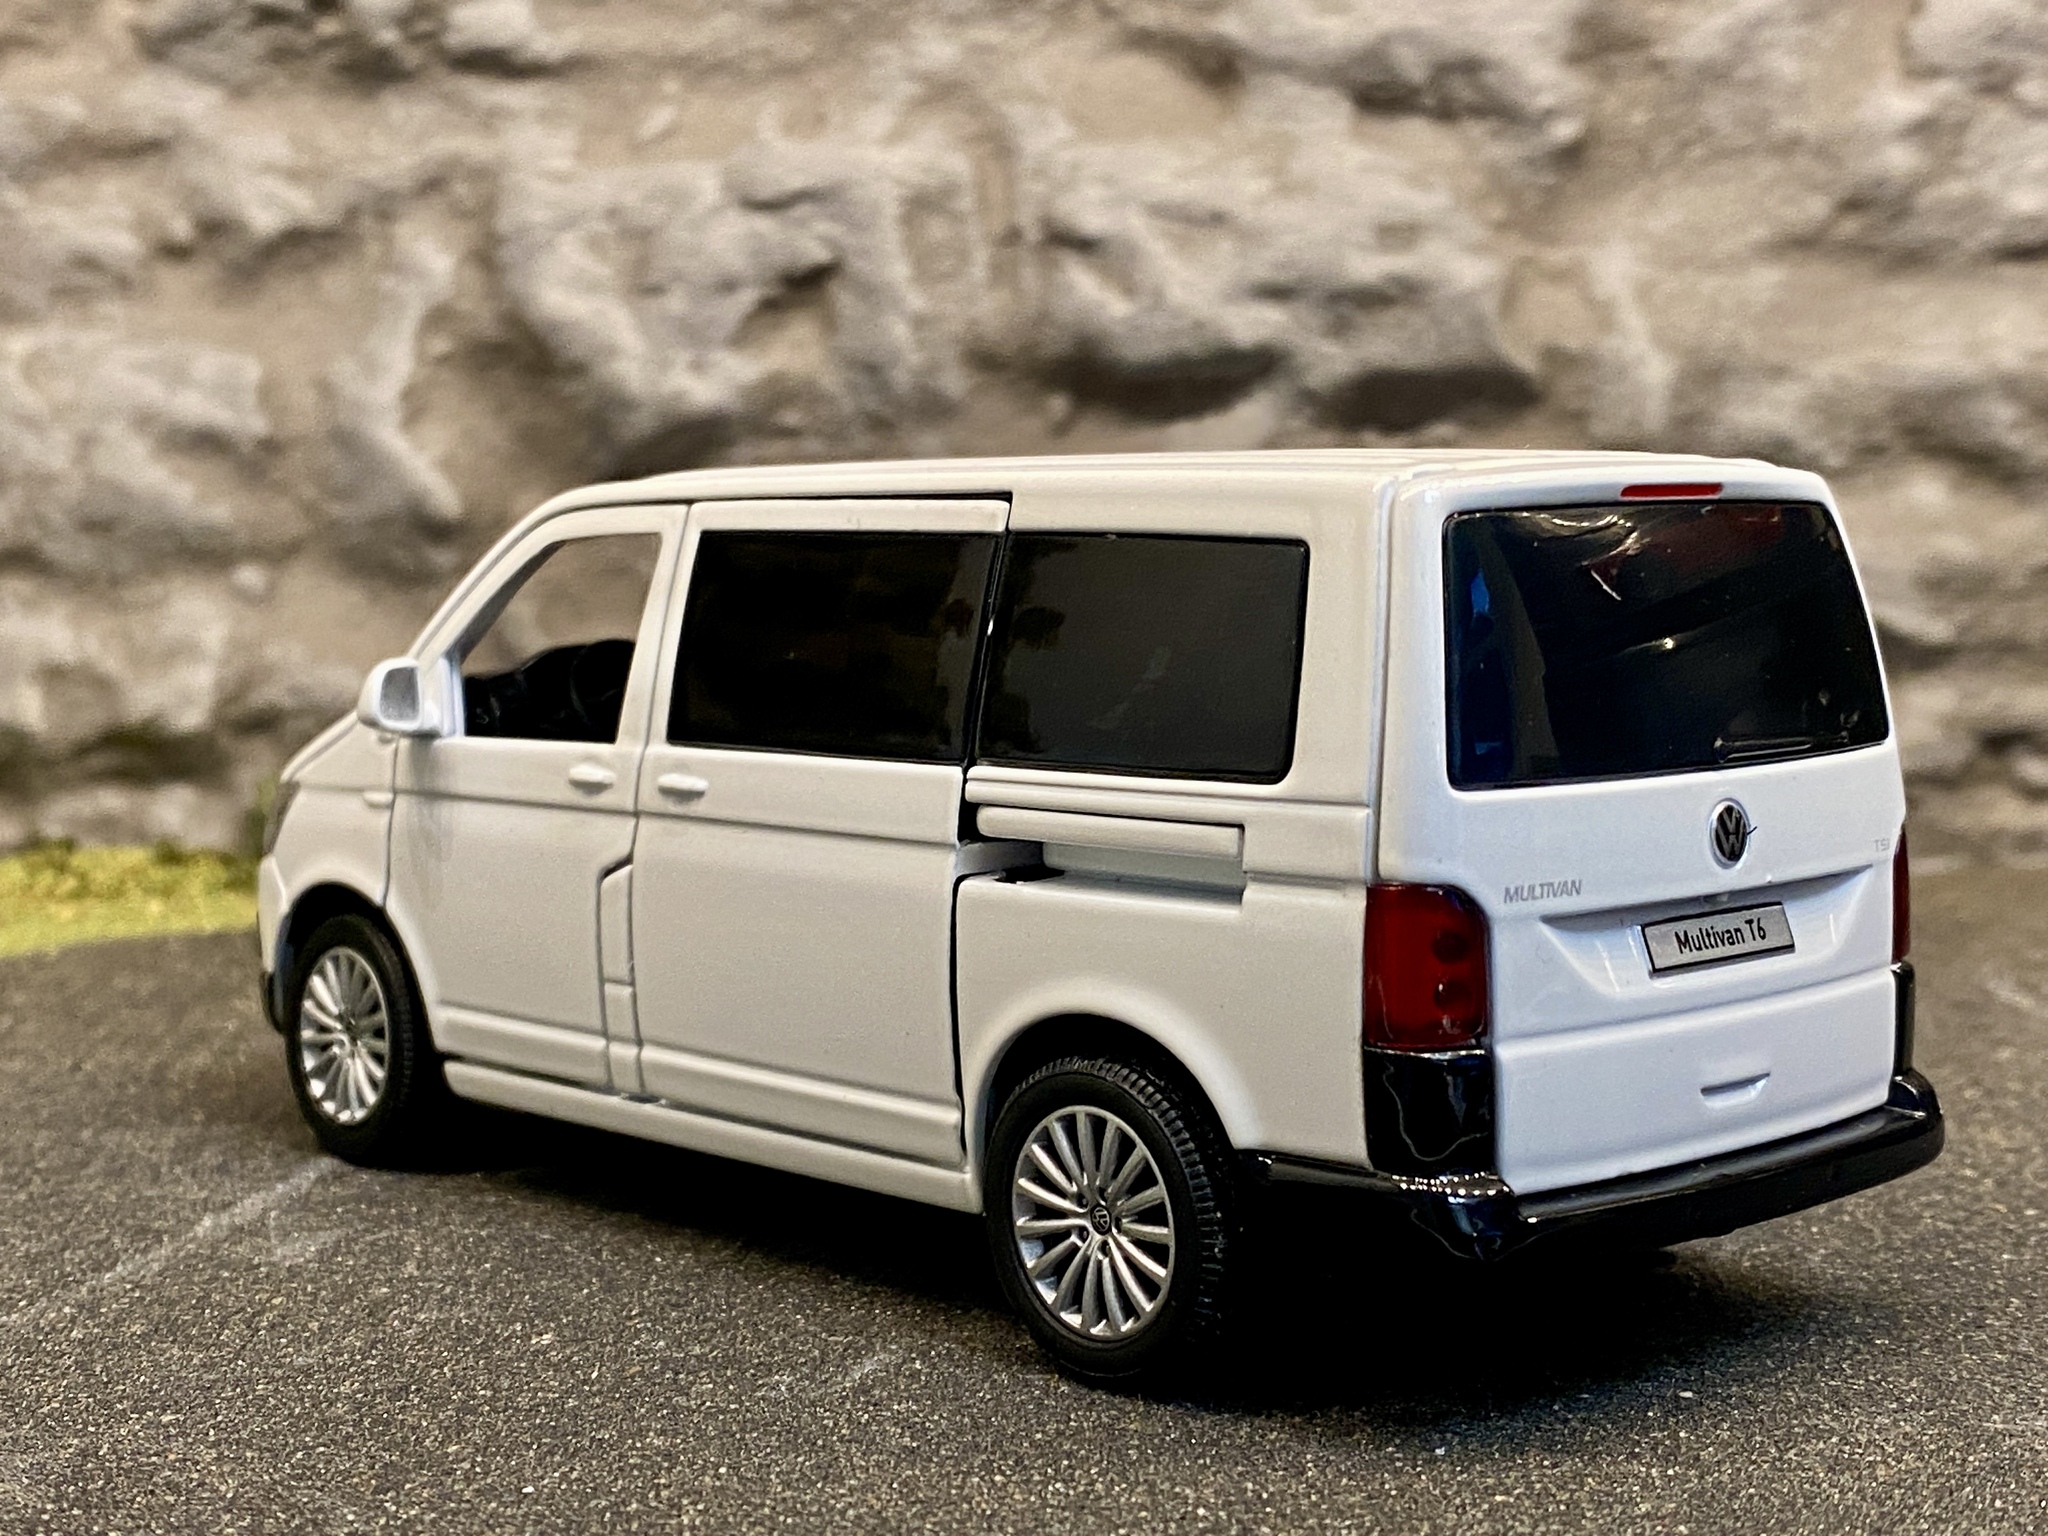 Skala 1/32 Volkswagen Multivan, Vit, Svart kartong från Tayumo